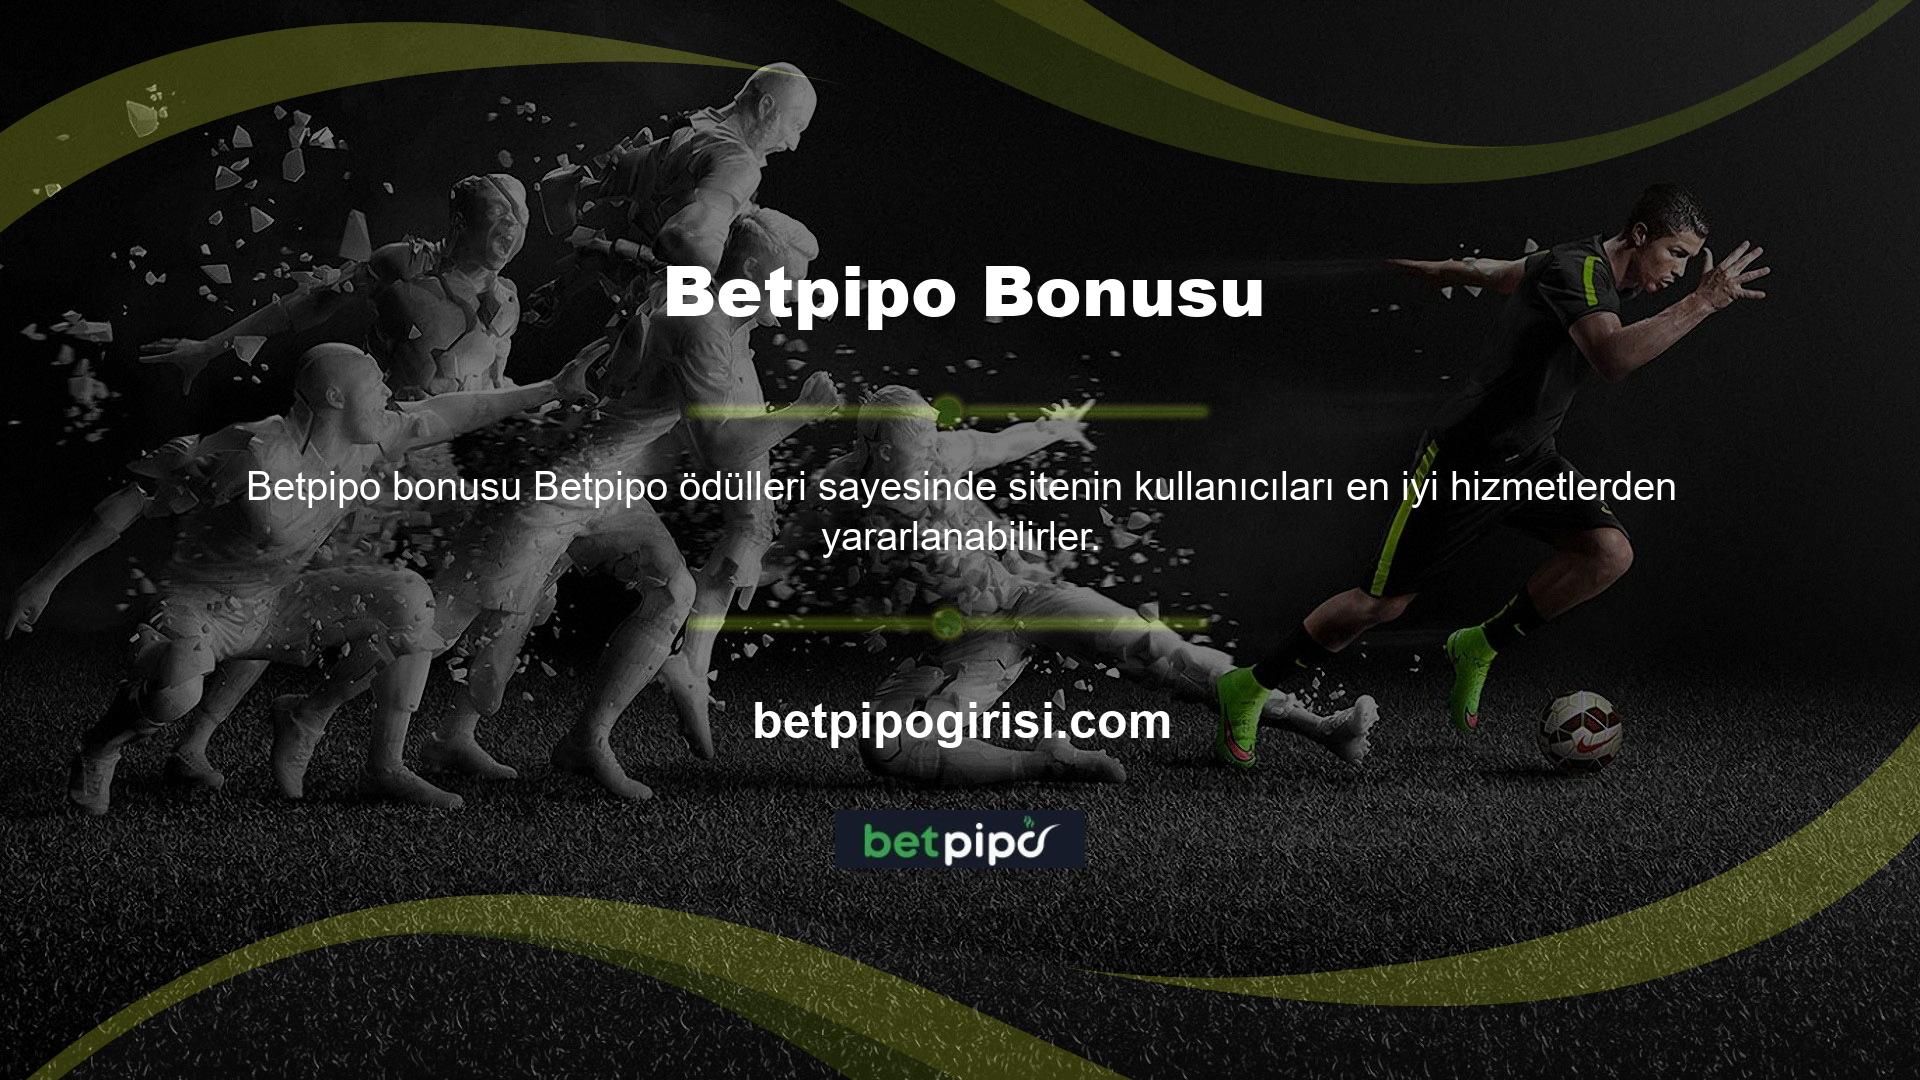 Betpipo web sitesi şimdiye kadarki en iyi içeriğe sahiptir ve yüksek güvenilirlikle lisanslanmıştır